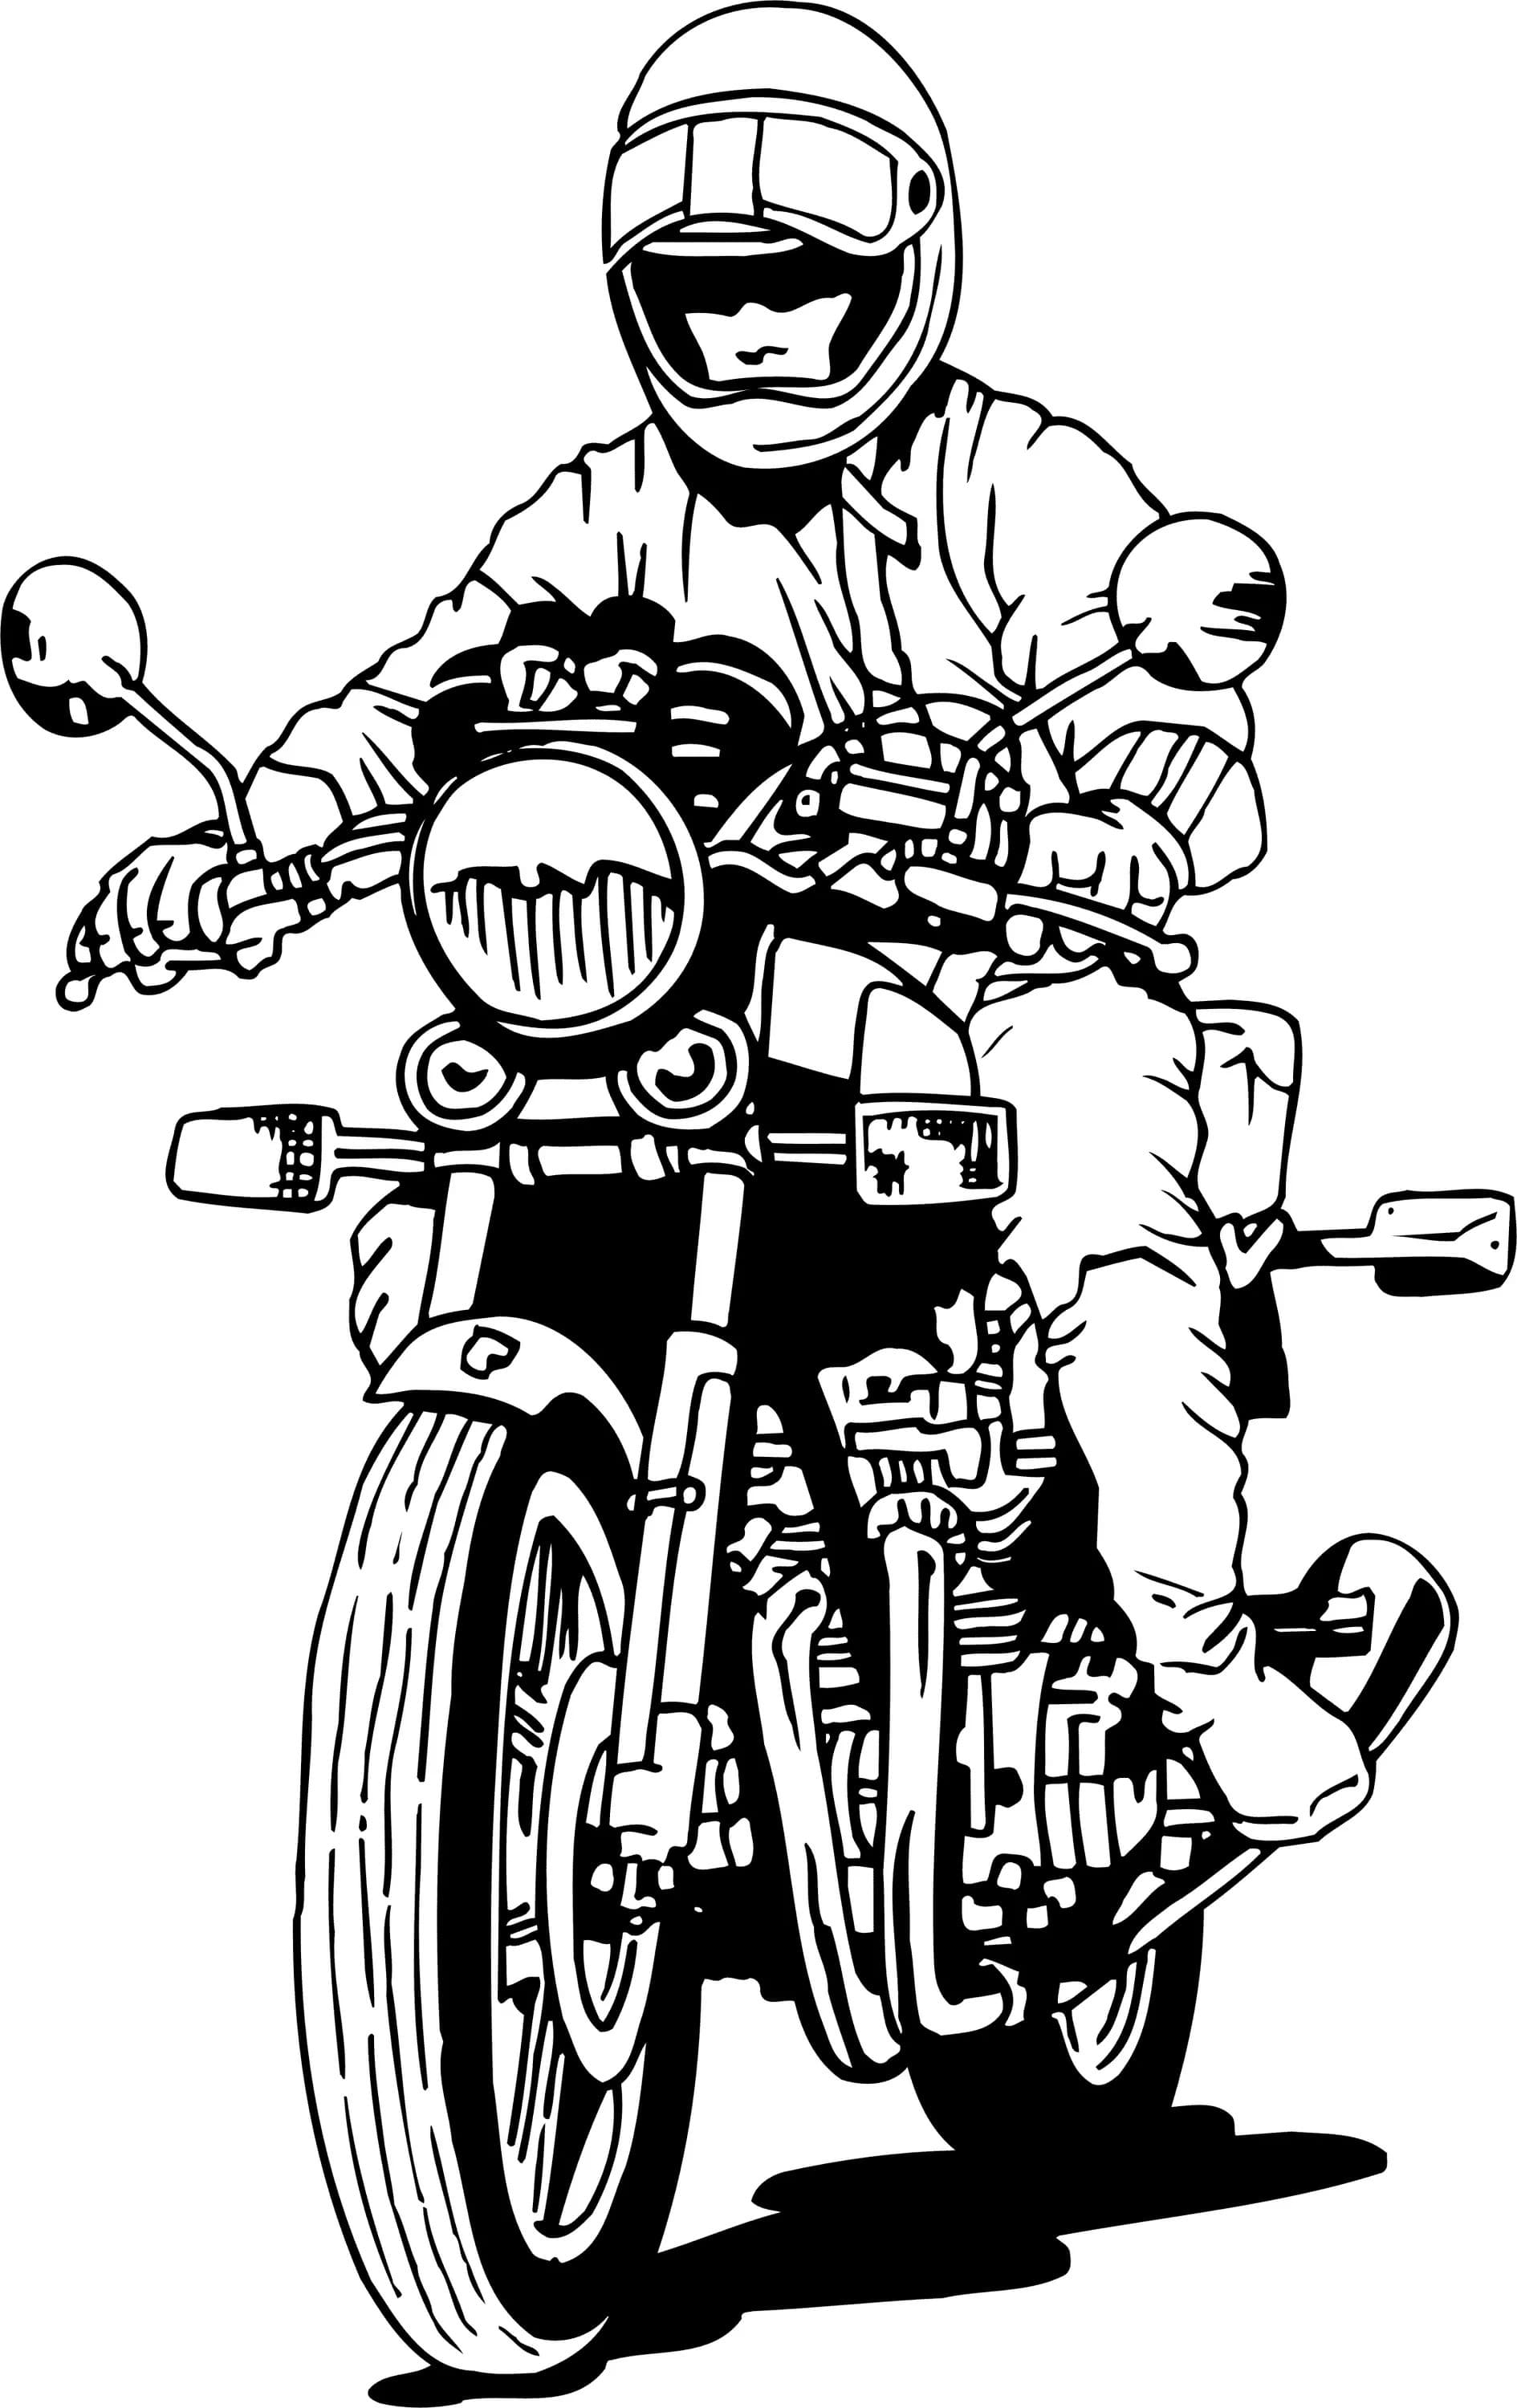 Desenhos de Motocicleta para Colorir